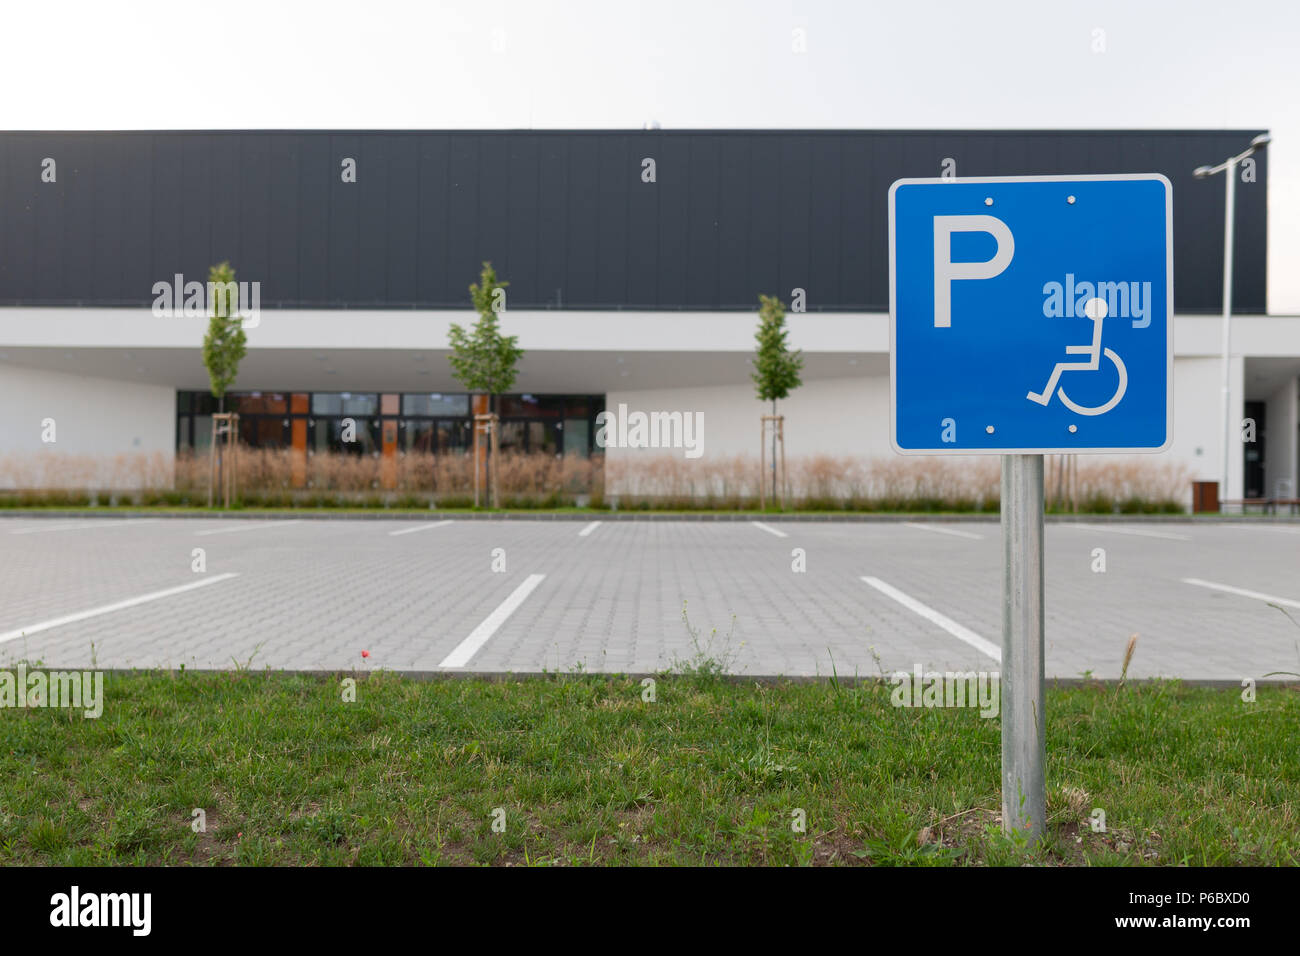 Deaktiviert das verkehrsschild an einen leeren Parkplatz stellen handicap Parkplätze ohne Auto oder Personen Stockfoto